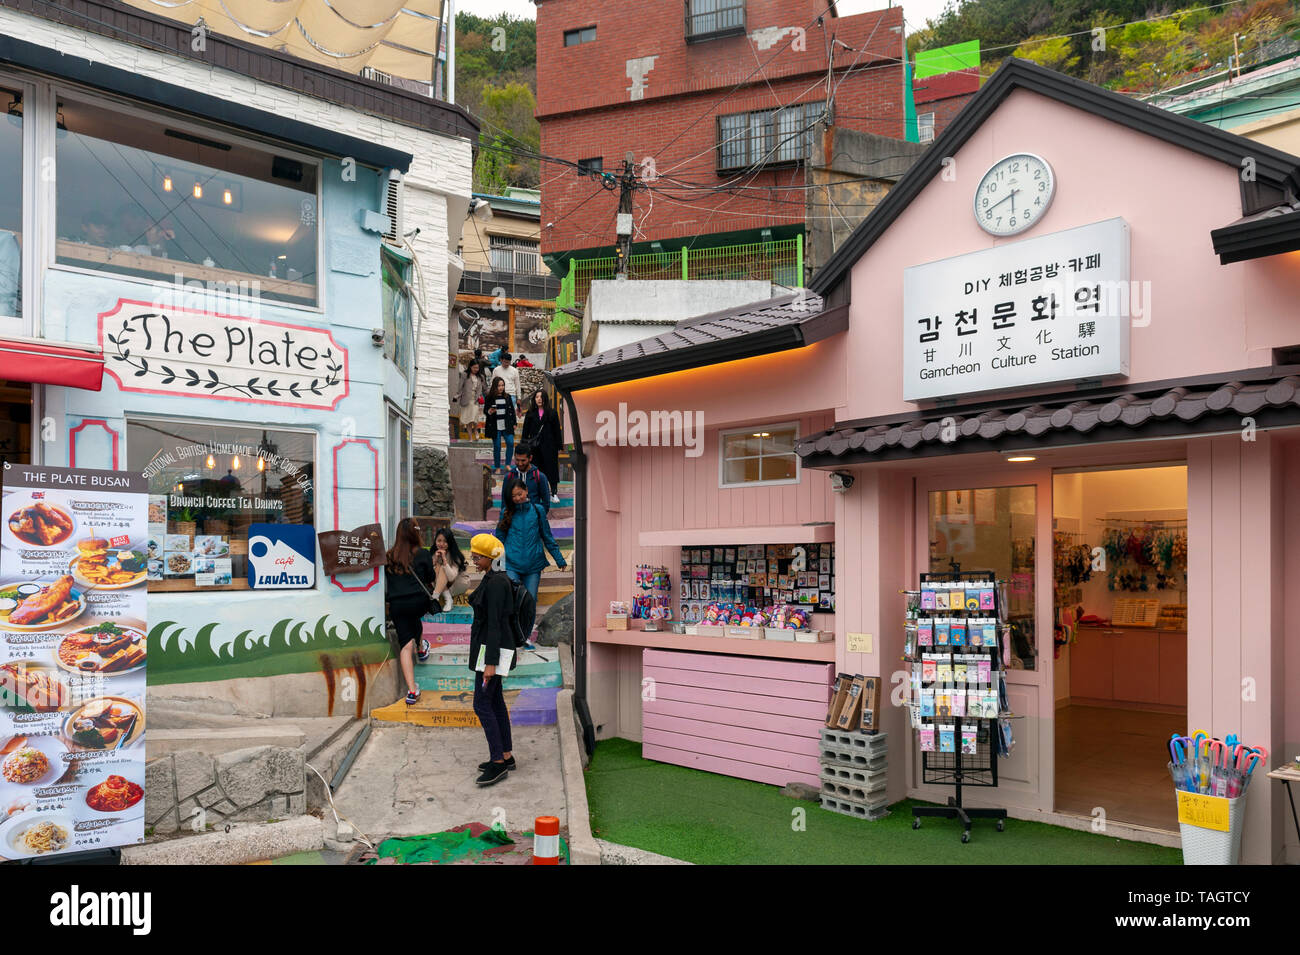 Les touristes visitant la culture Gamcheon Village, célèbre attraction touristique avec ses maisons des iles à Busan, Corée du Sud Banque D'Images